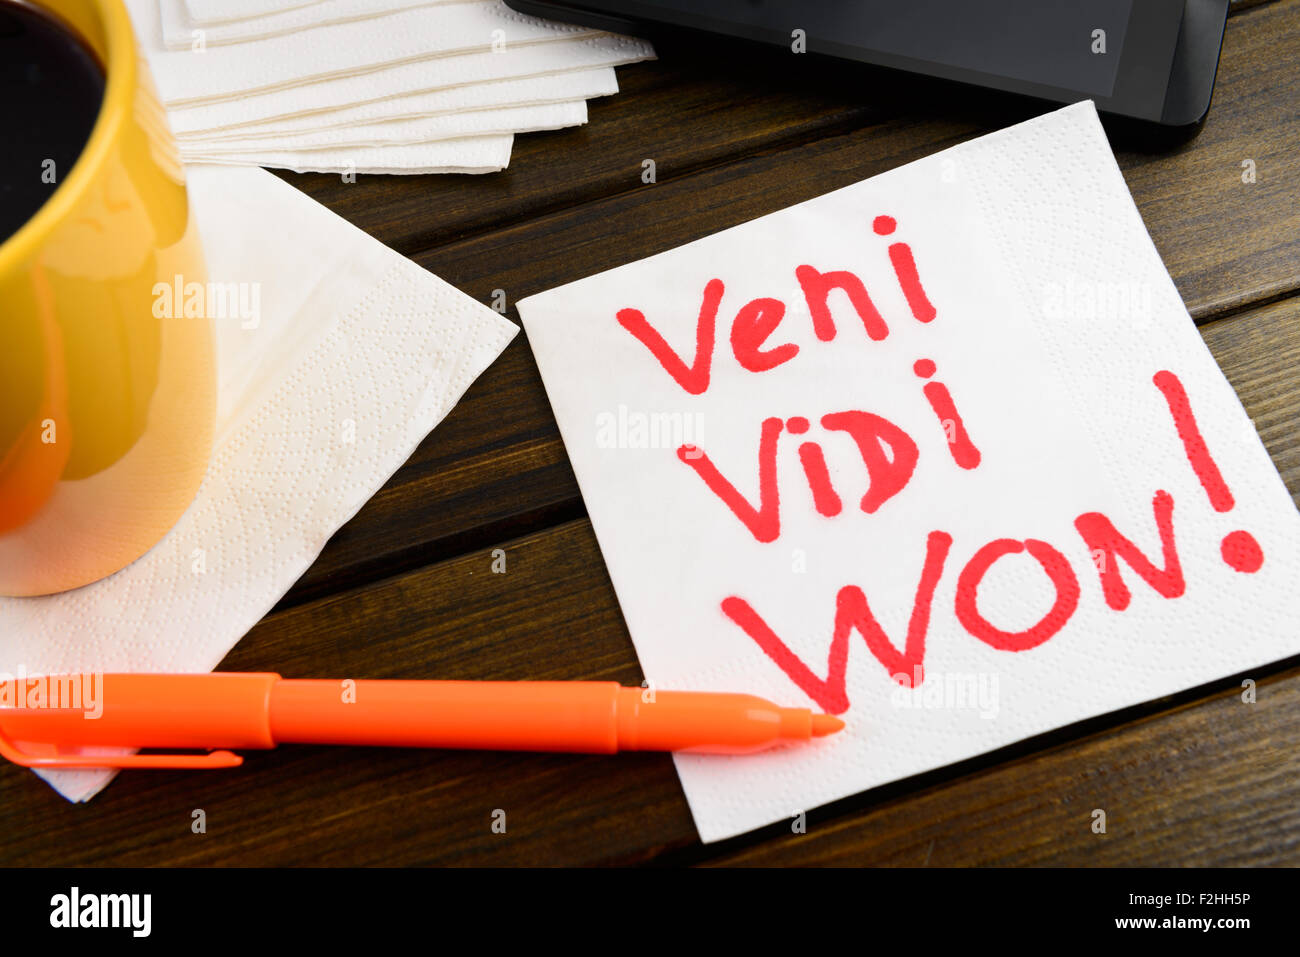 Veni vidi won writing on white napkin around coffee pen and phone on wooden table Stock Photo